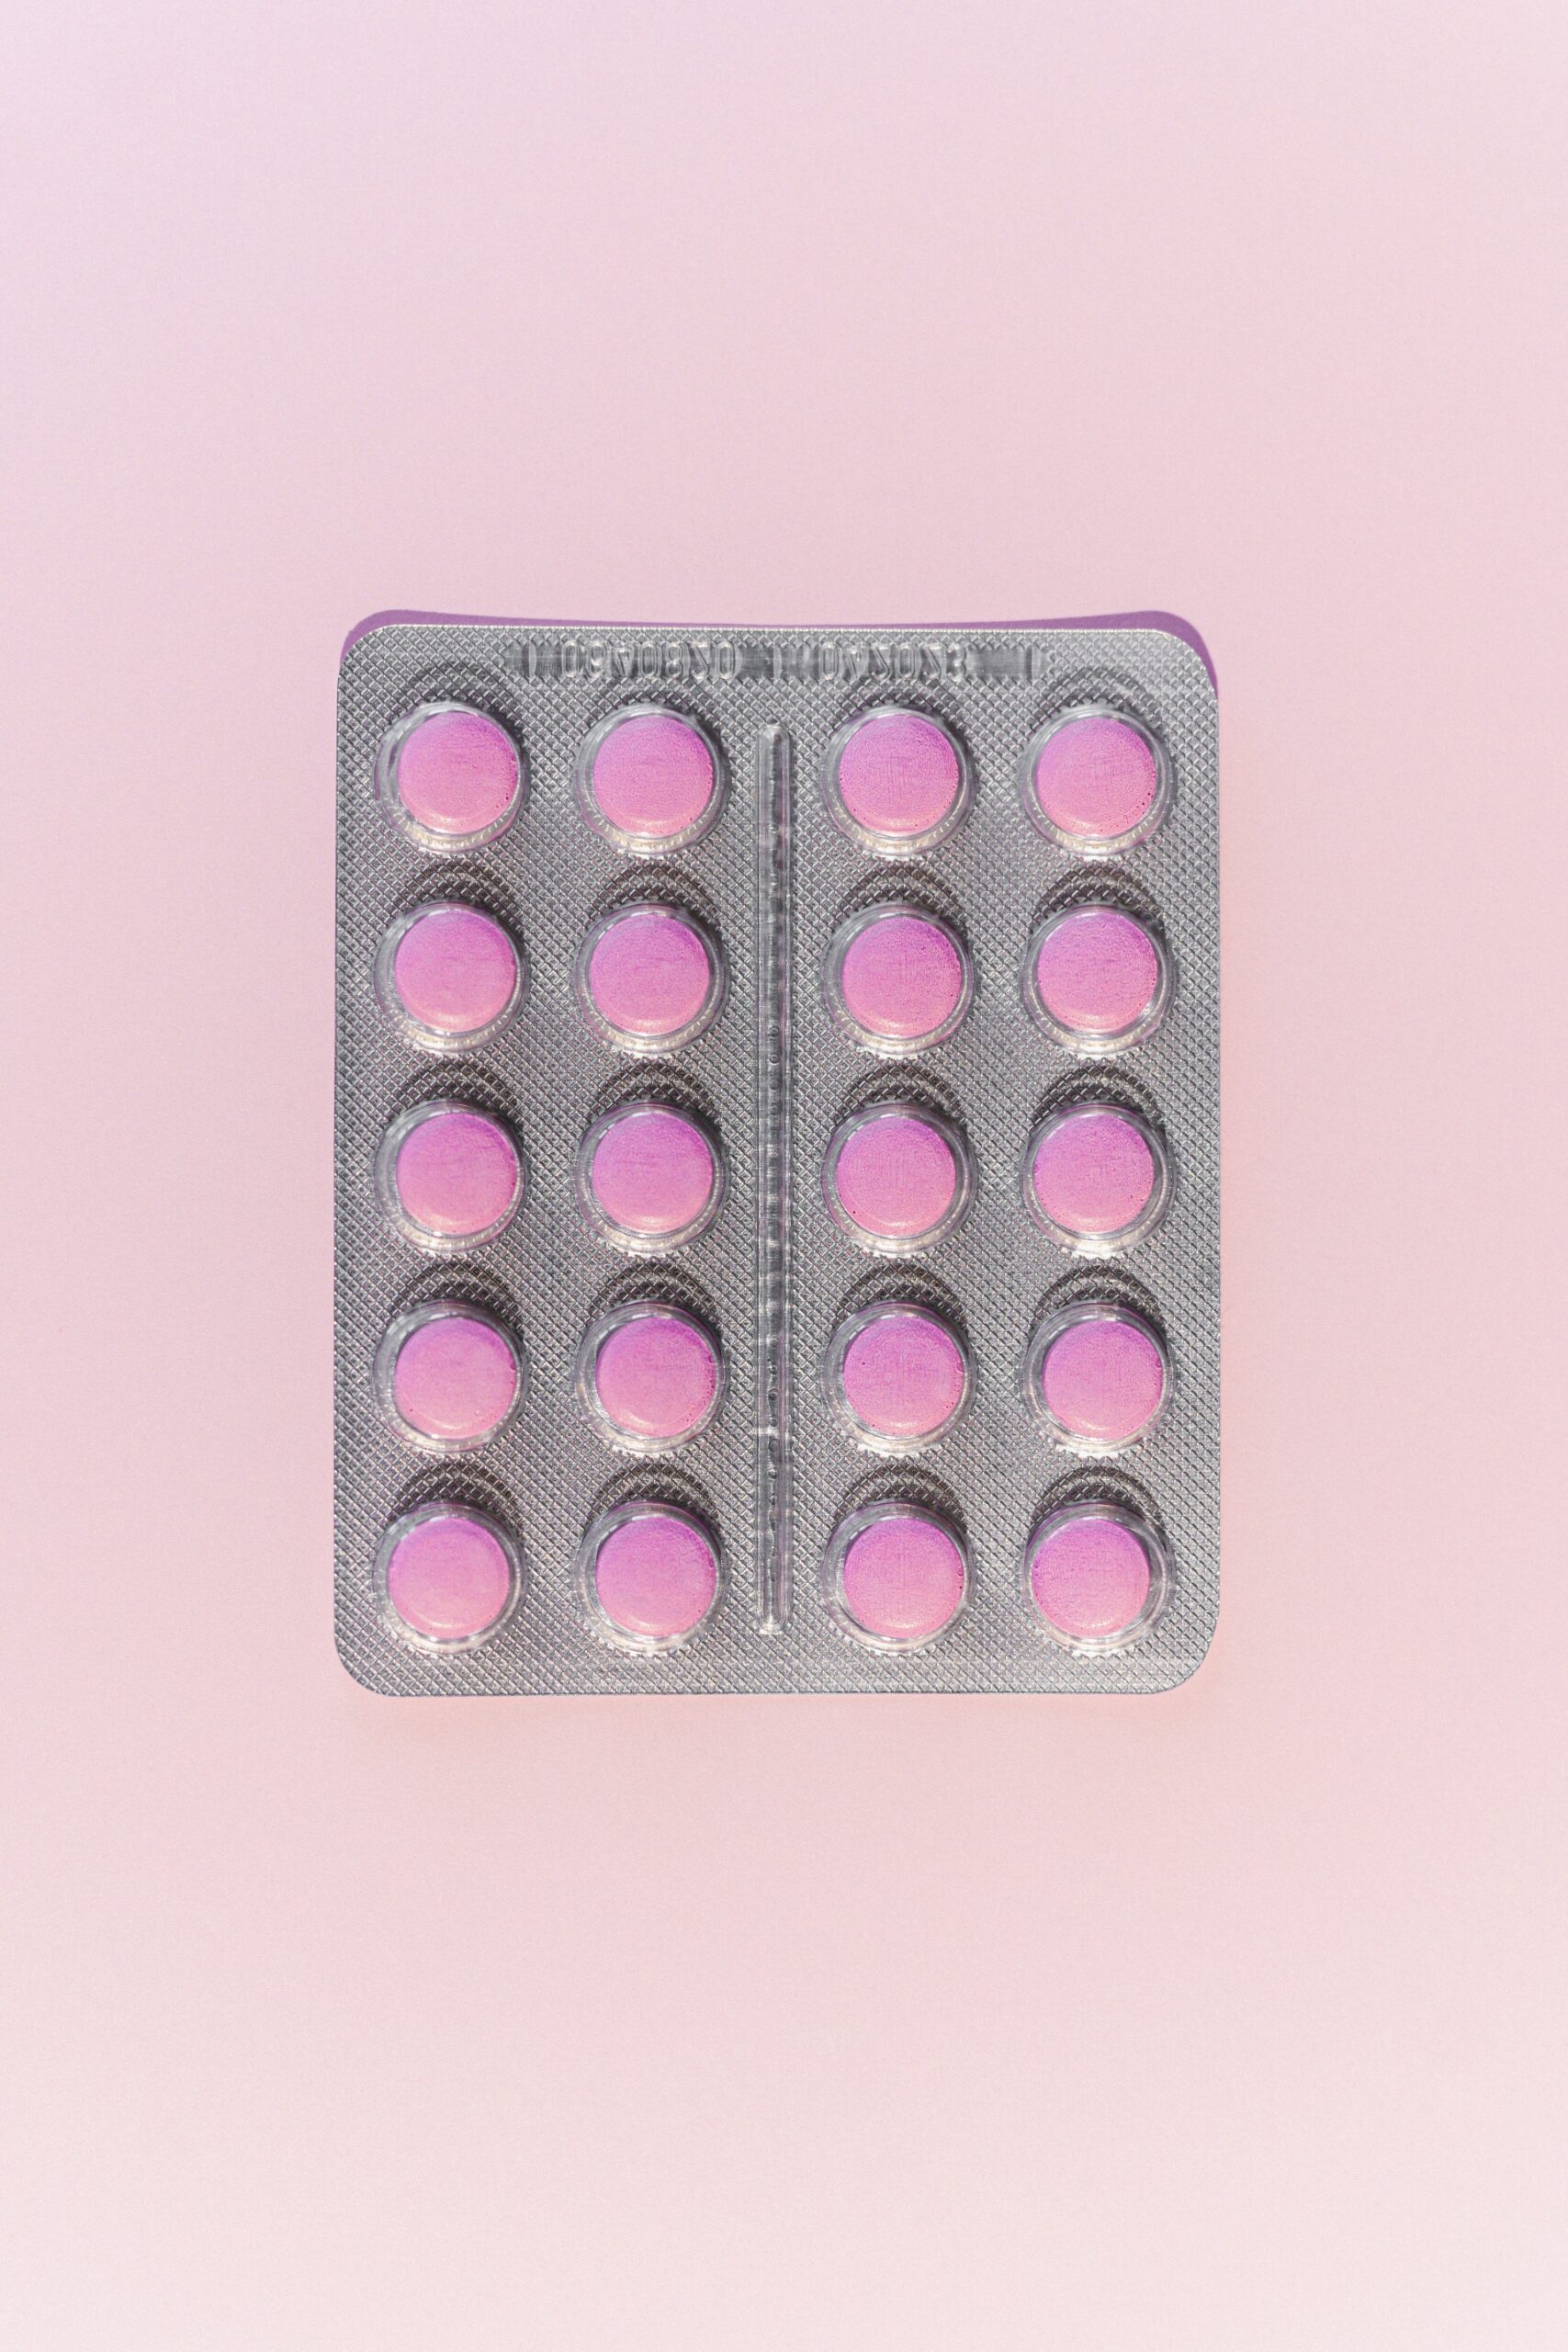 Birth Control Detox Home Remedy